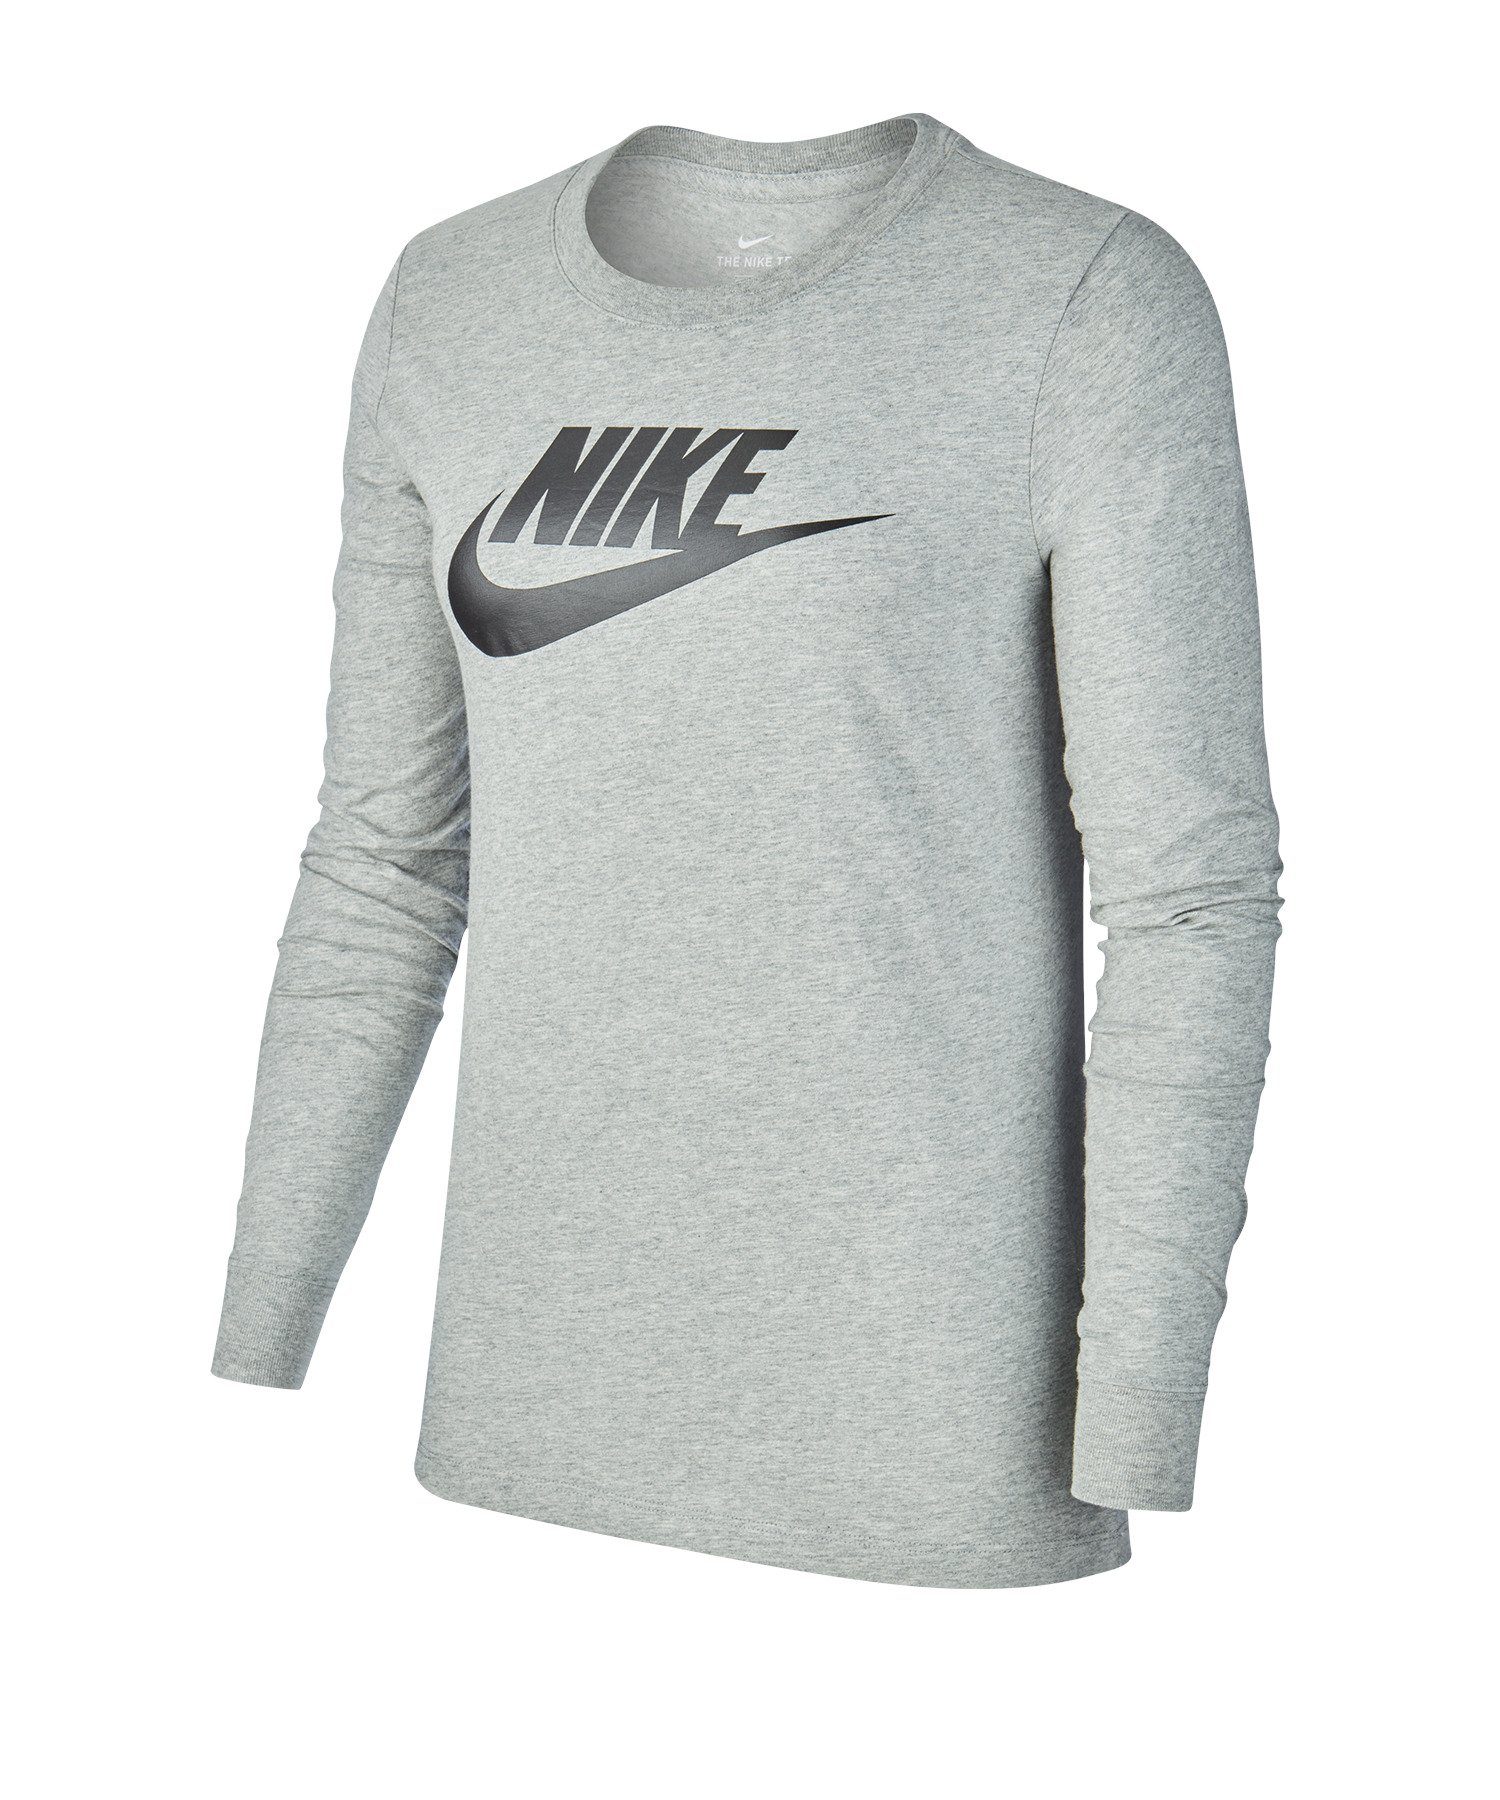 Damen grau Sweater Sweatshirt Nike Essential Sportswear